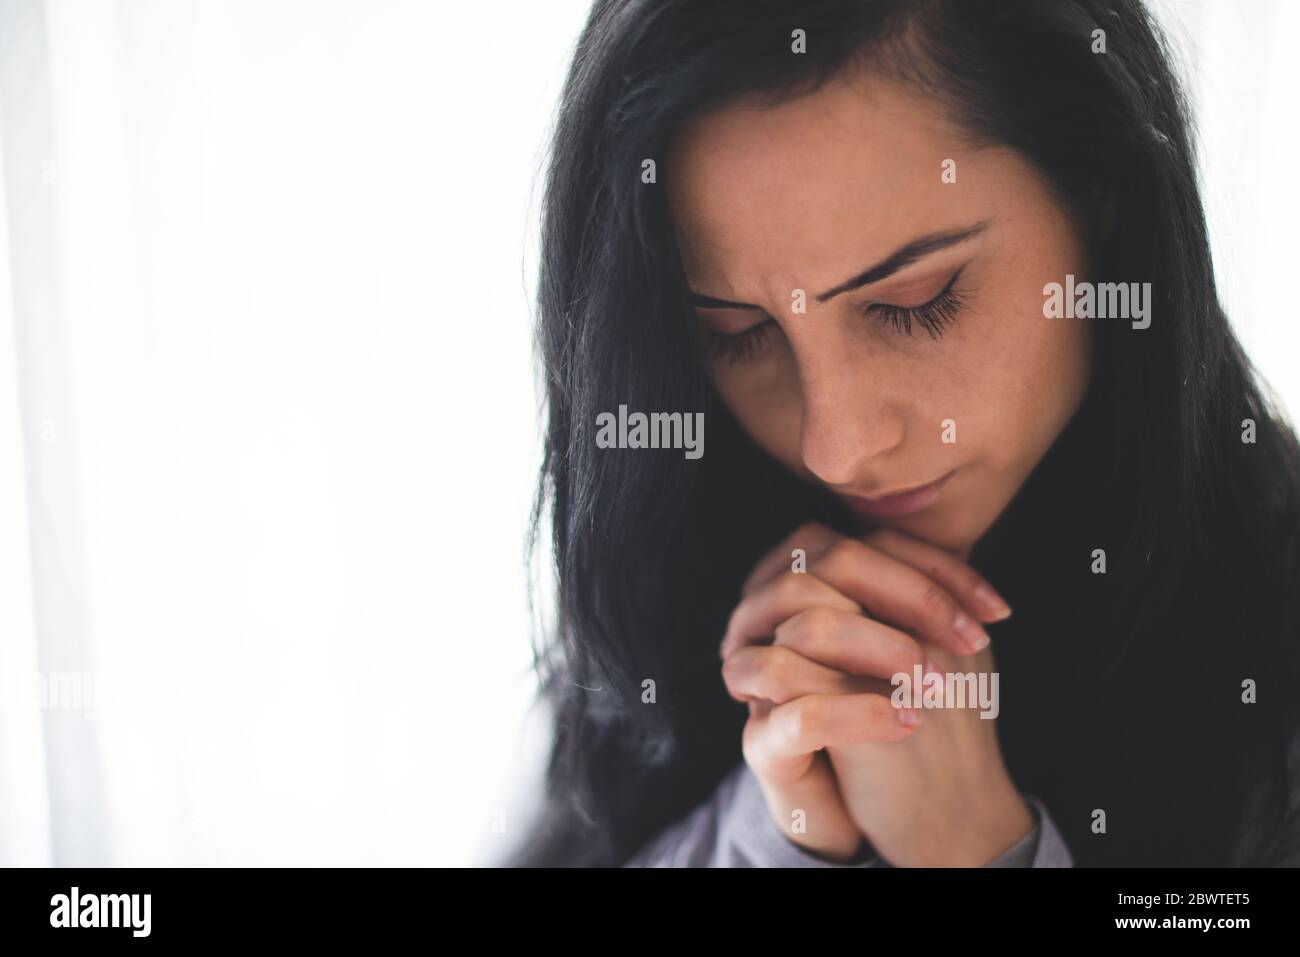 Portrait de la femme qui priait pendant la pandémie Banque D'Images